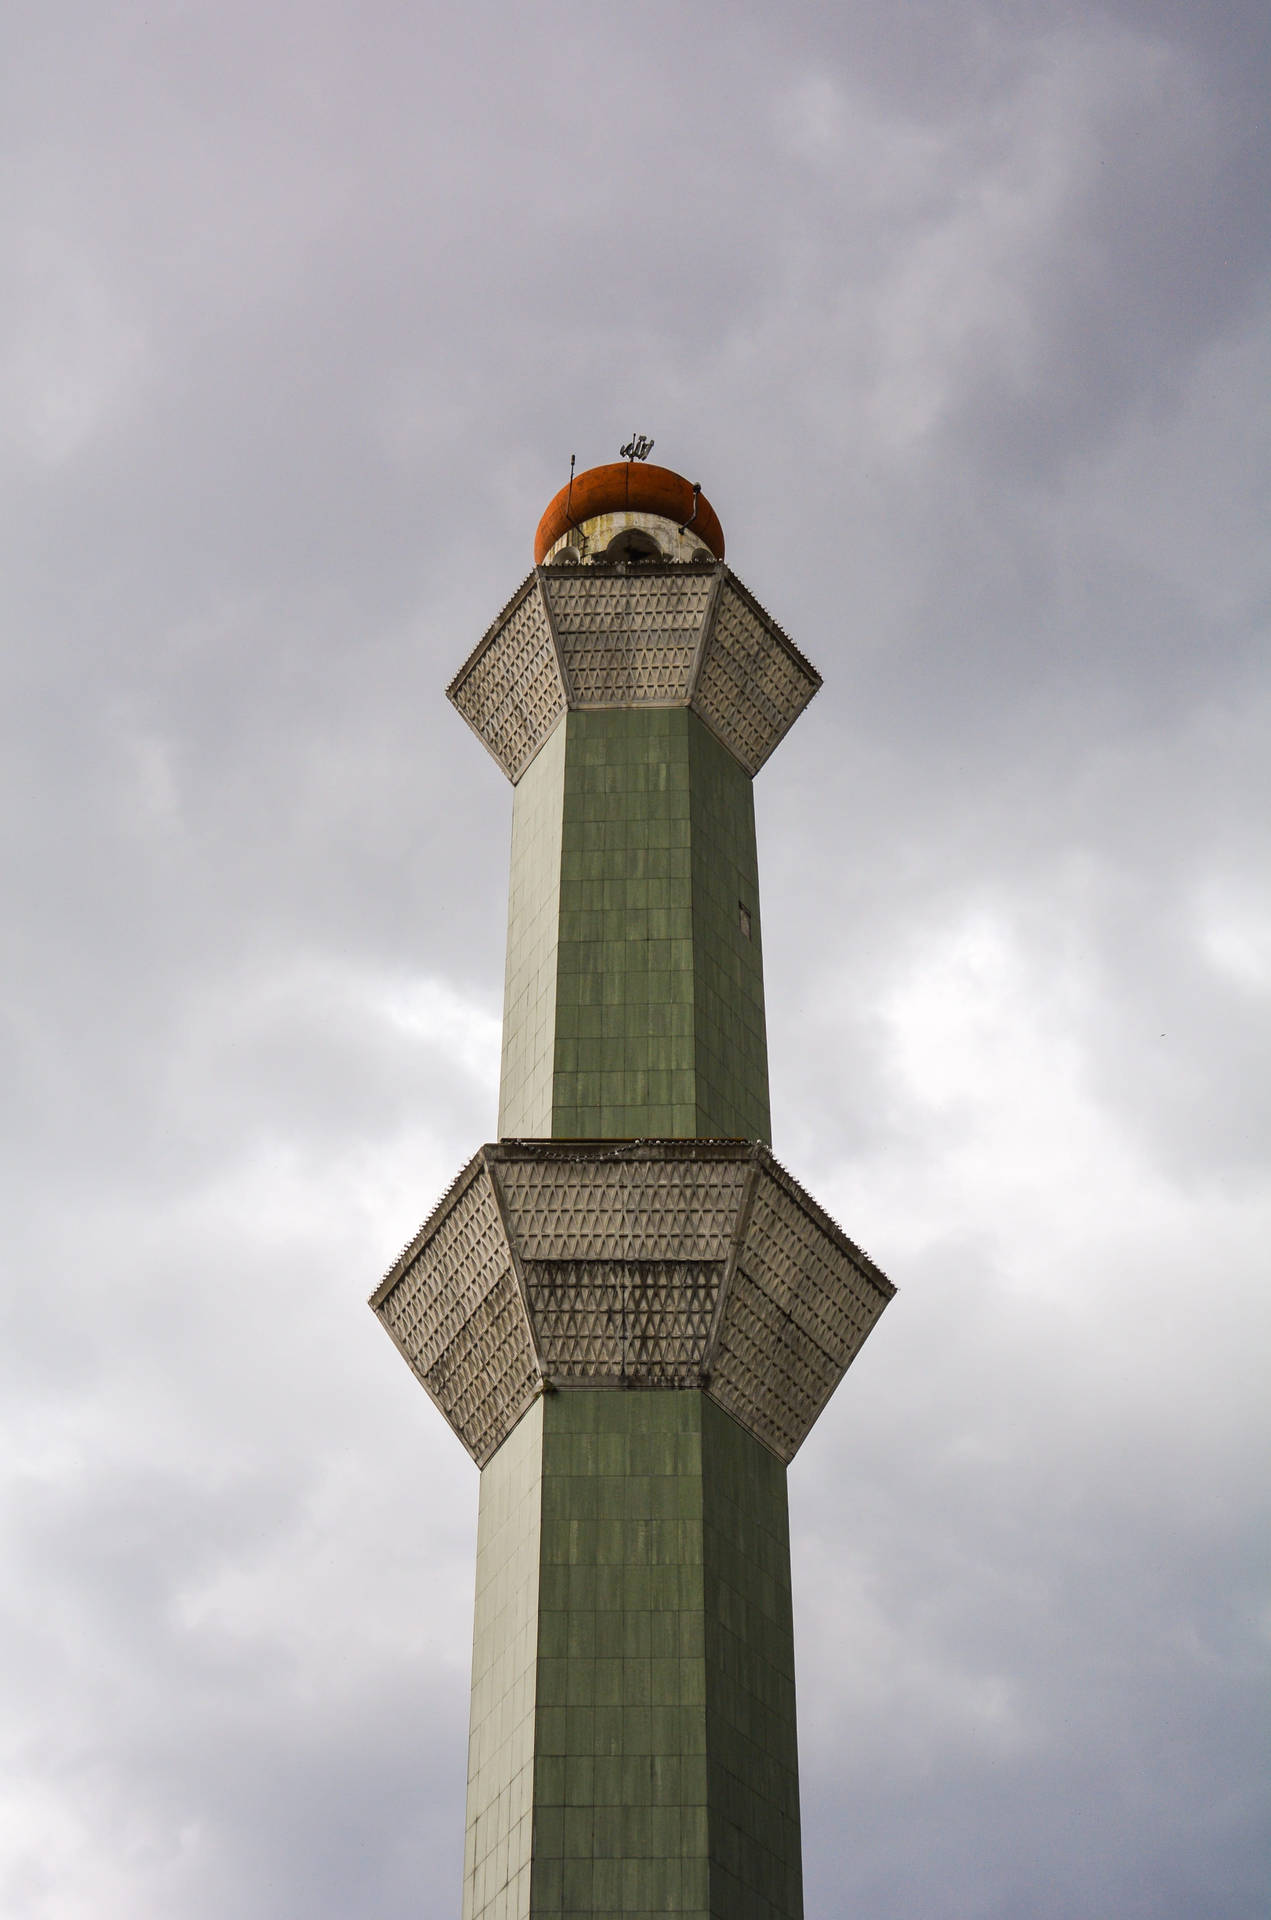 Bandung's største moské minaret indgår i baggrundsbilledet. Wallpaper